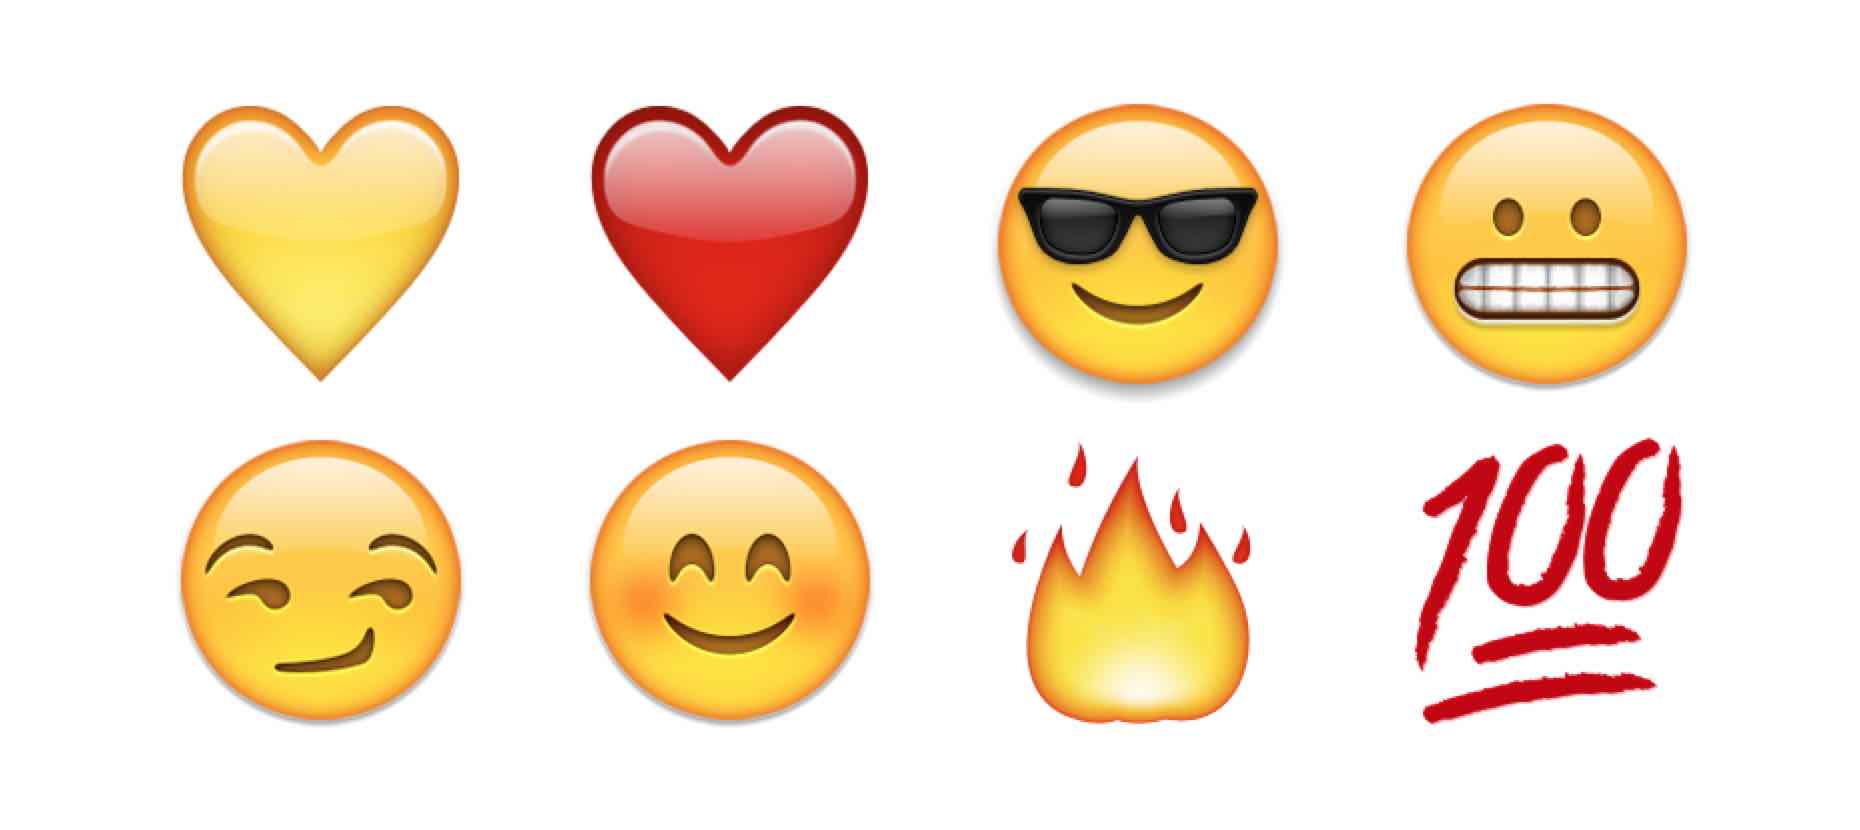 ð??» Snapchat Emoji Meanings — ð??? Friend Emojis